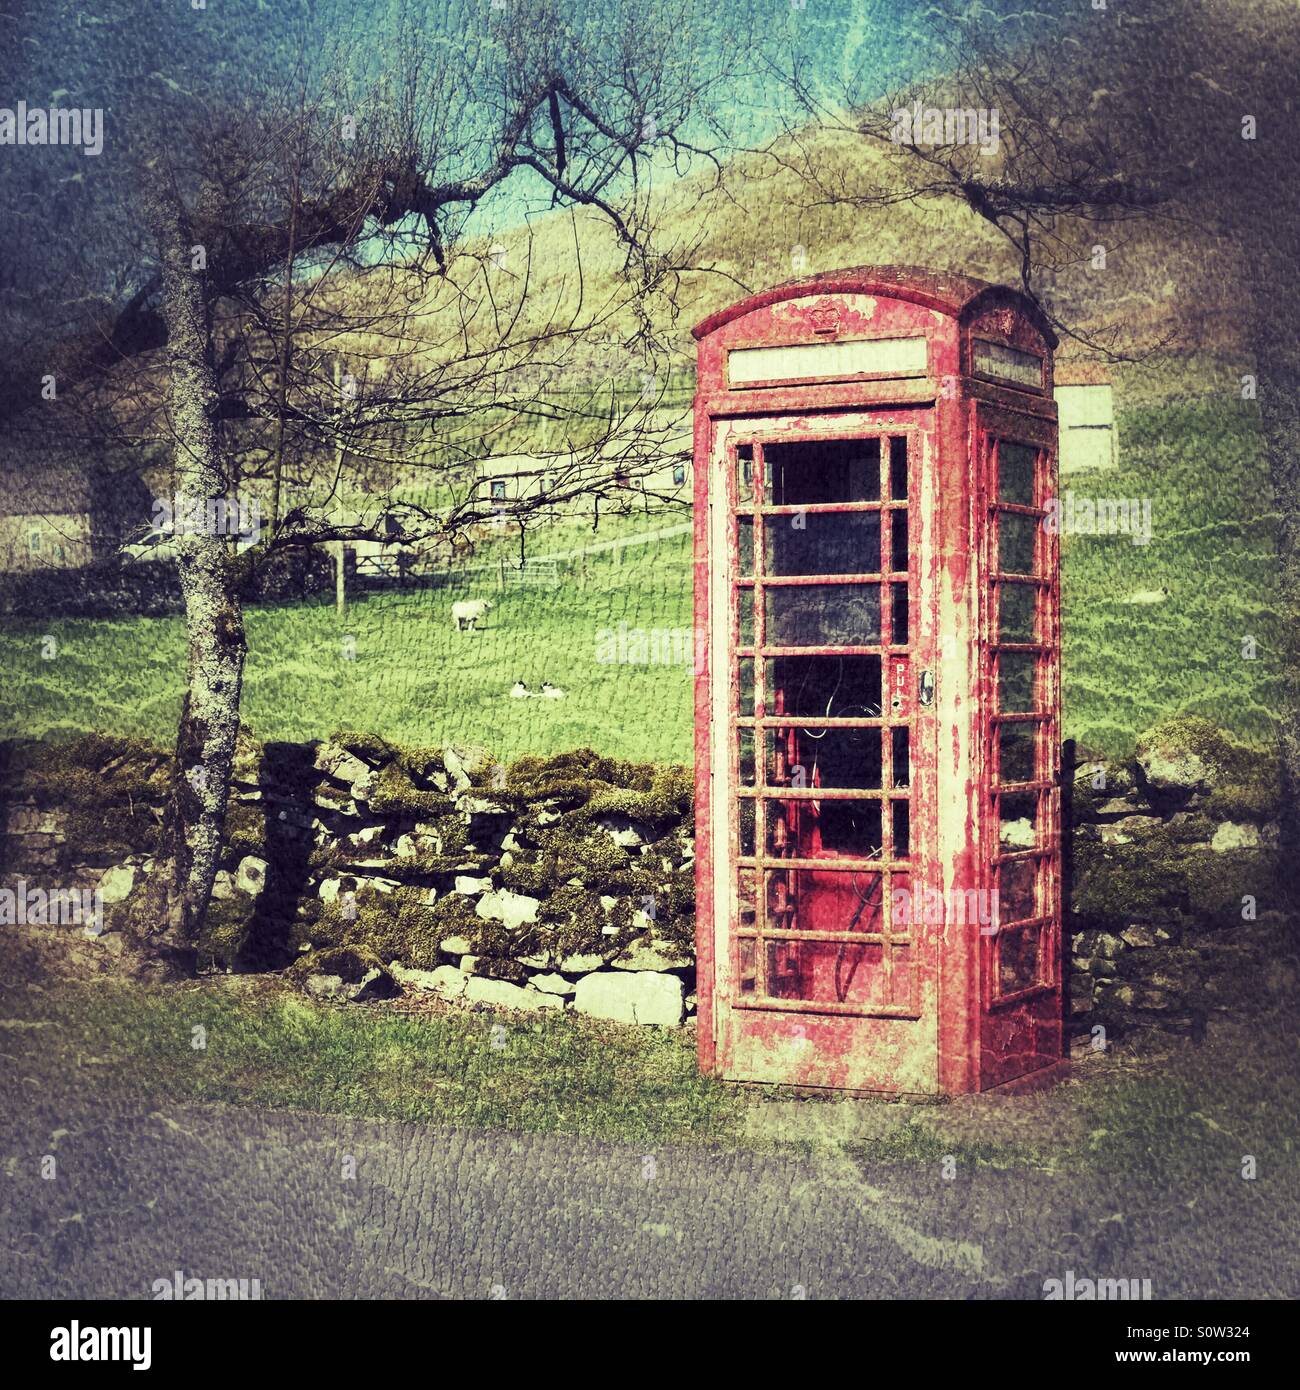 Abandoned red english telephone box. Stock Photo